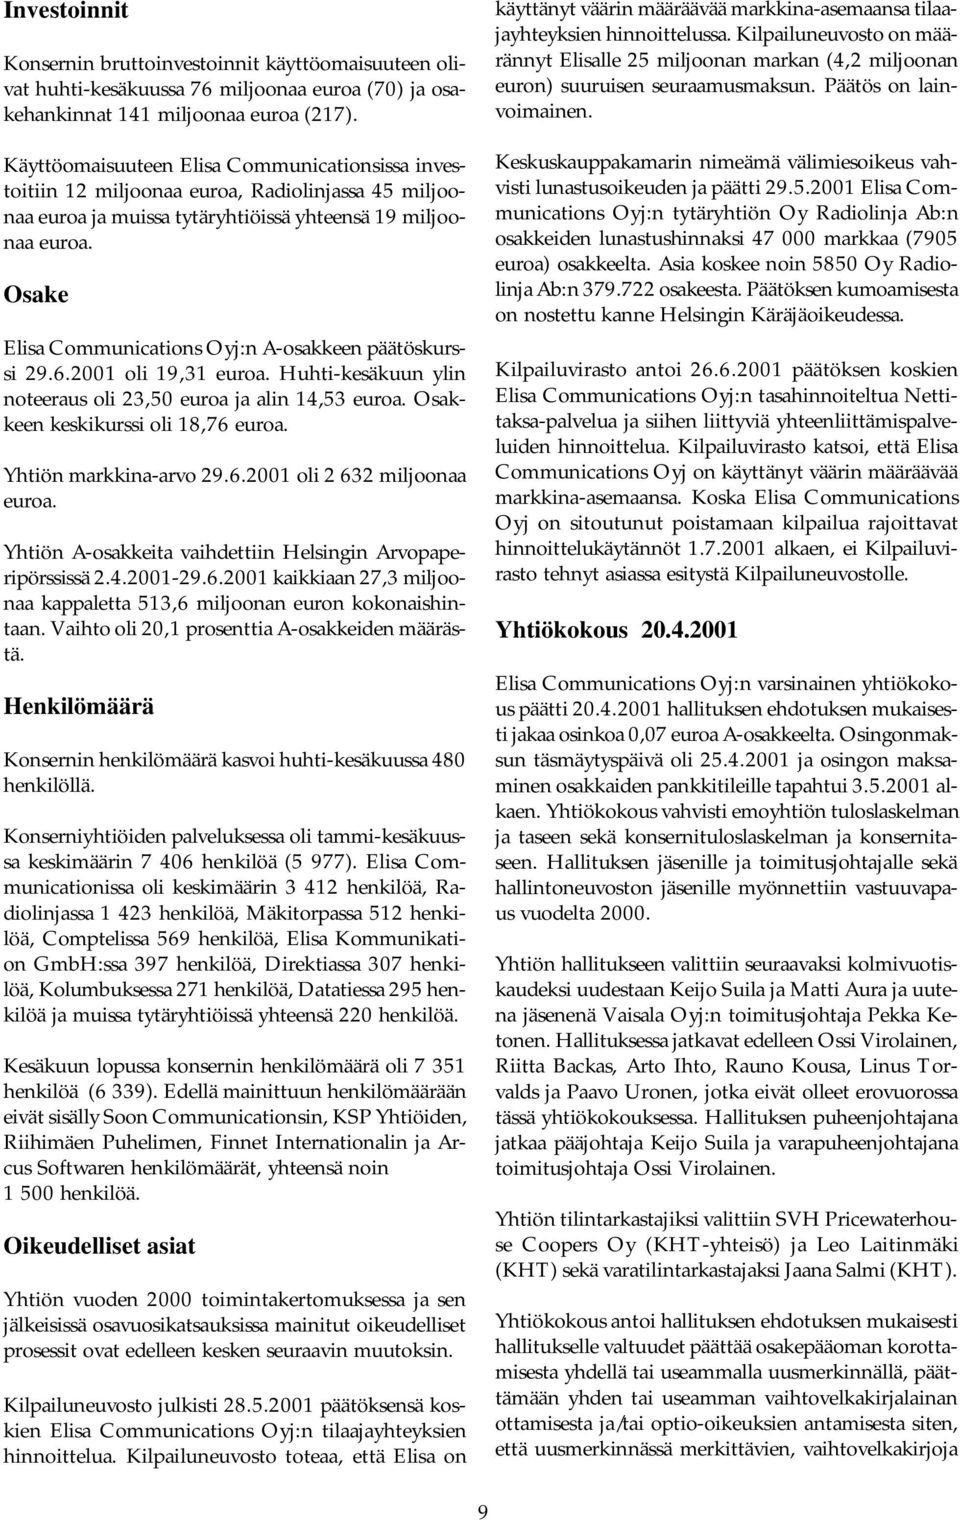 Osake Elisa Communications Oyj:n A-osakkeen päätöskurssi 29.6.2001 oli 19,31 euroa. Huhti-kesäkuun ylin noteeraus oli 23,50 euroa ja alin 14,53 euroa. Osakkeen keskikurssi oli 18,76 euroa.